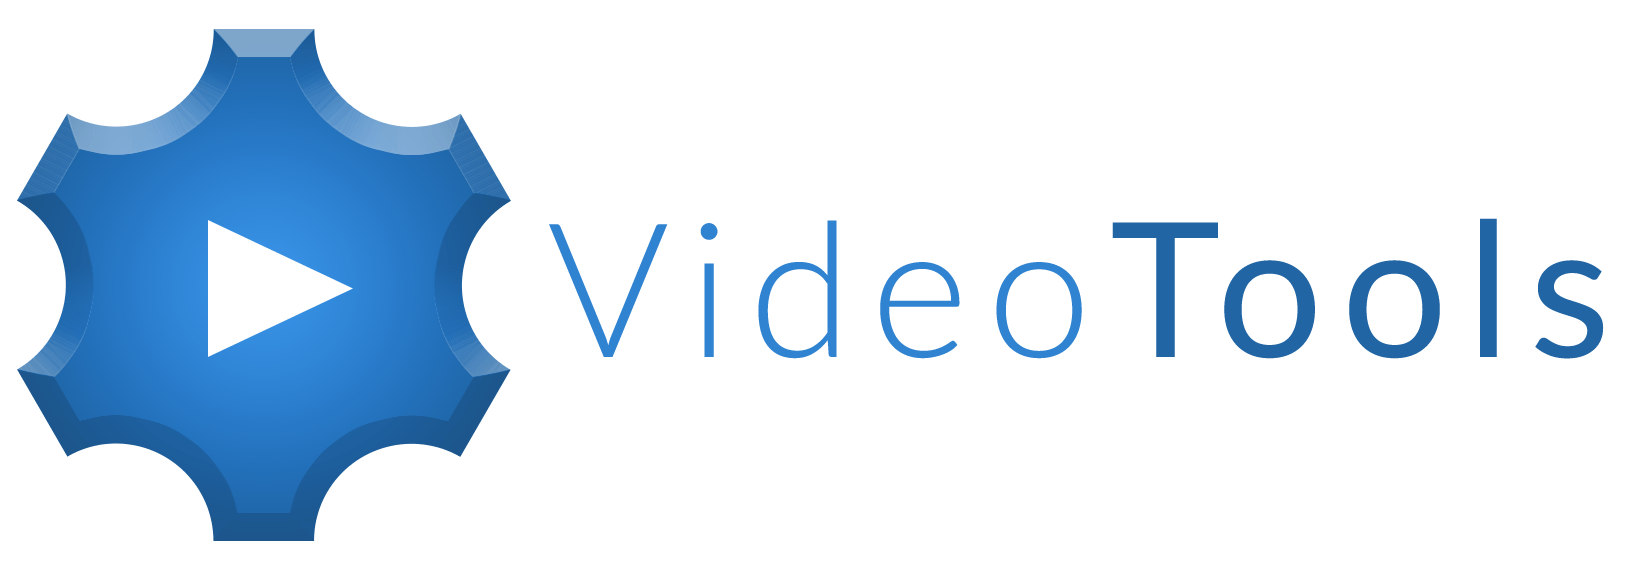 video tools logo